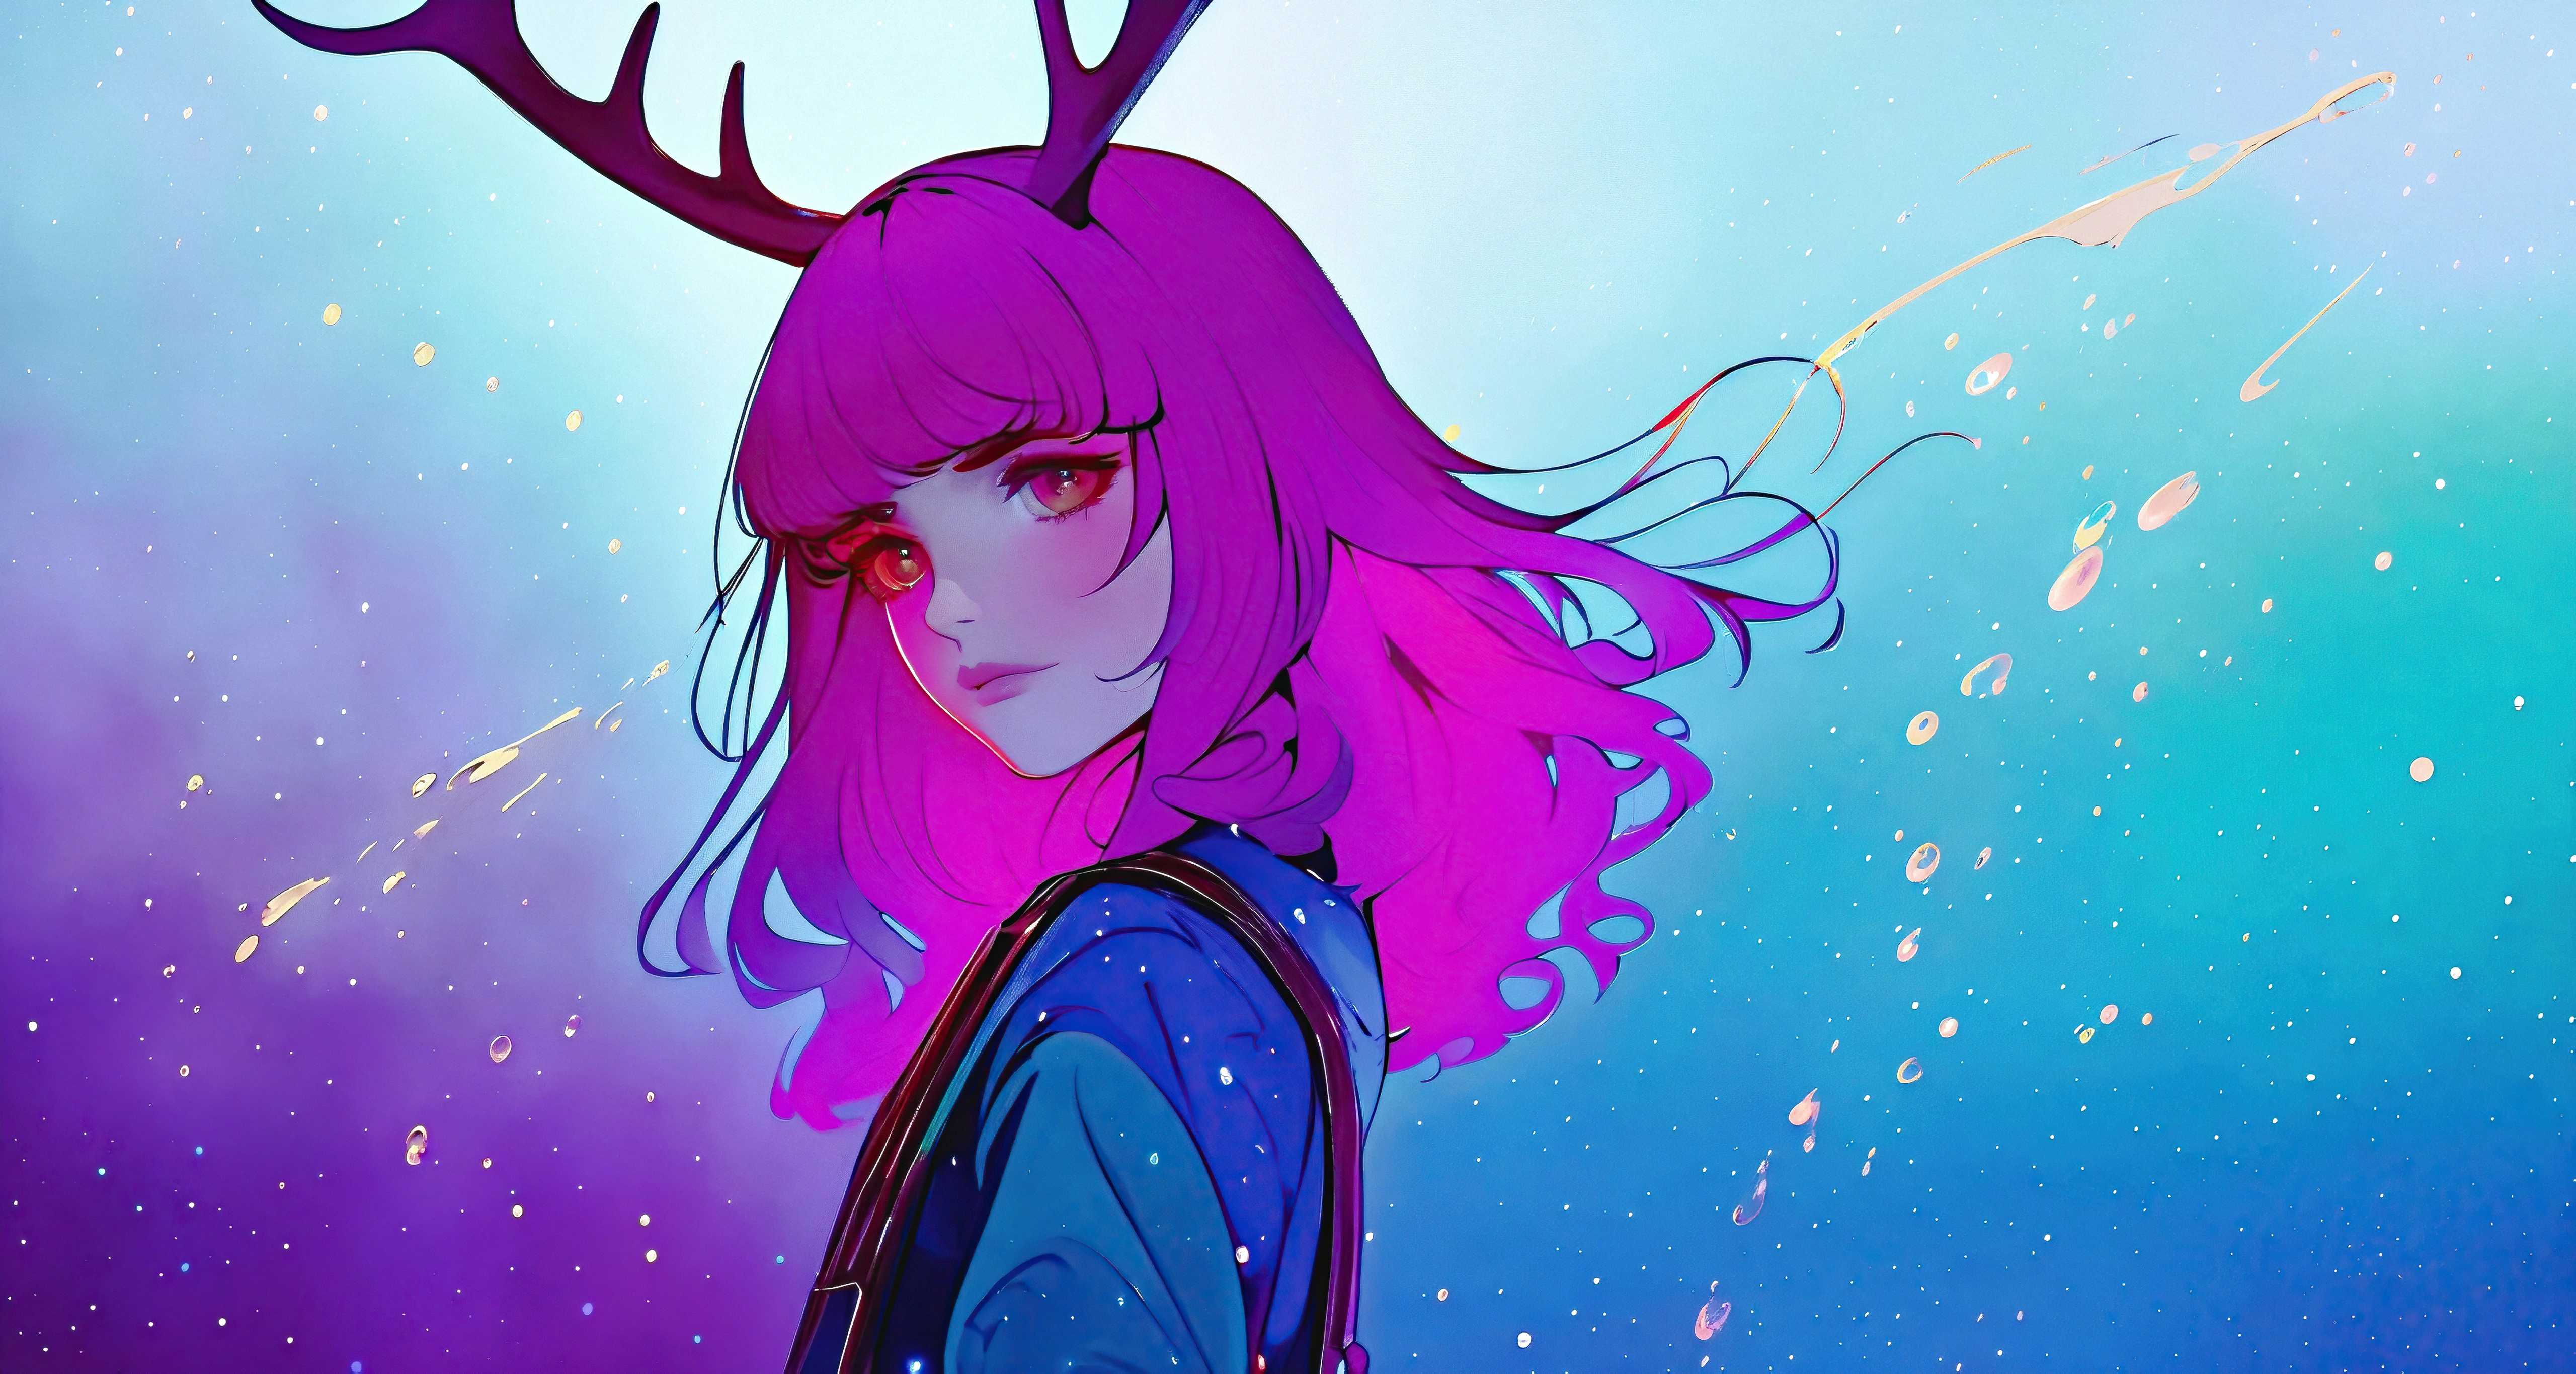 purple hair girl with horns j4.jpg